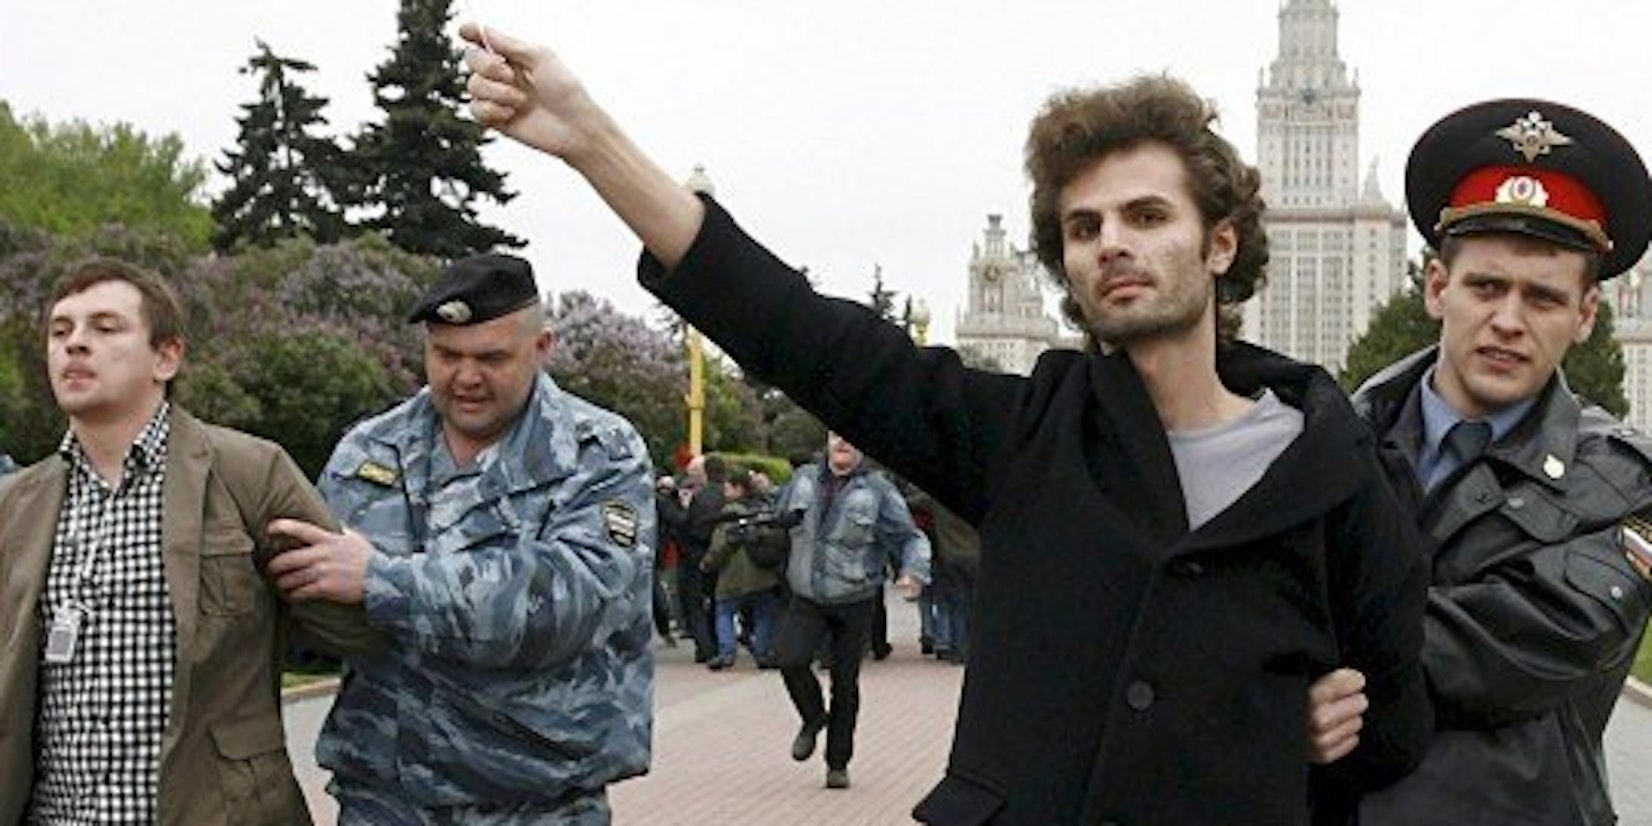 Festnahme eines Protestanten bei einer Schwulenparade in Russland.